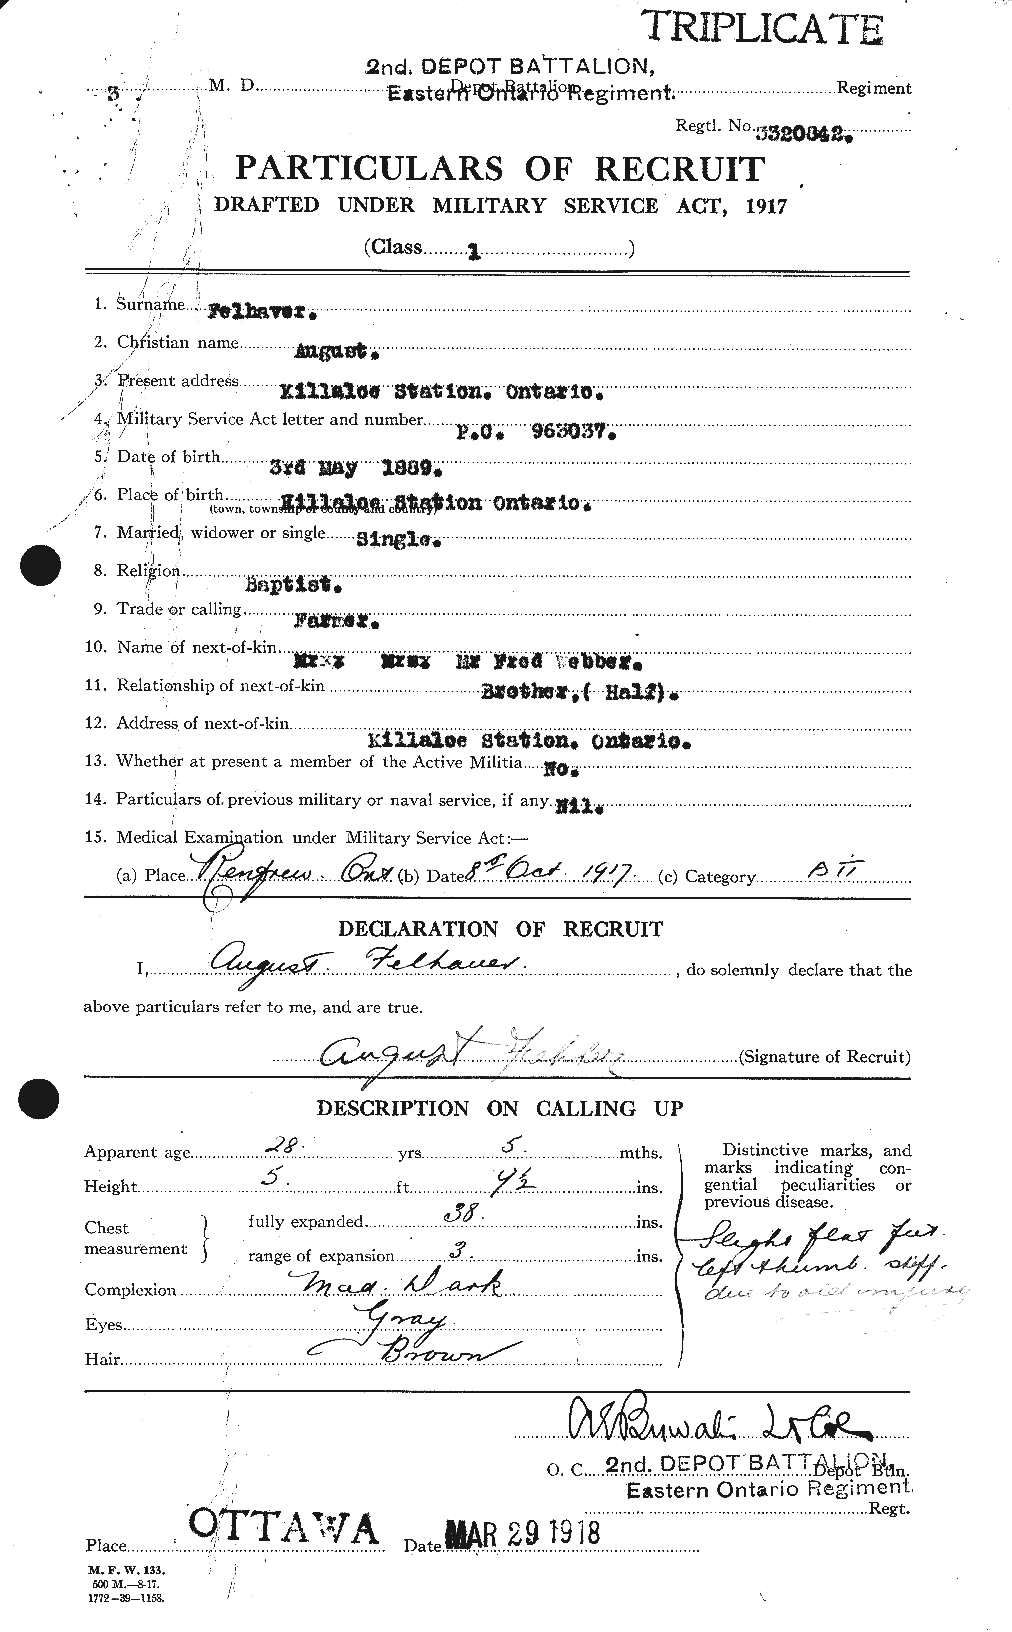 Dossiers du Personnel de la Première Guerre mondiale - CEC 321863a